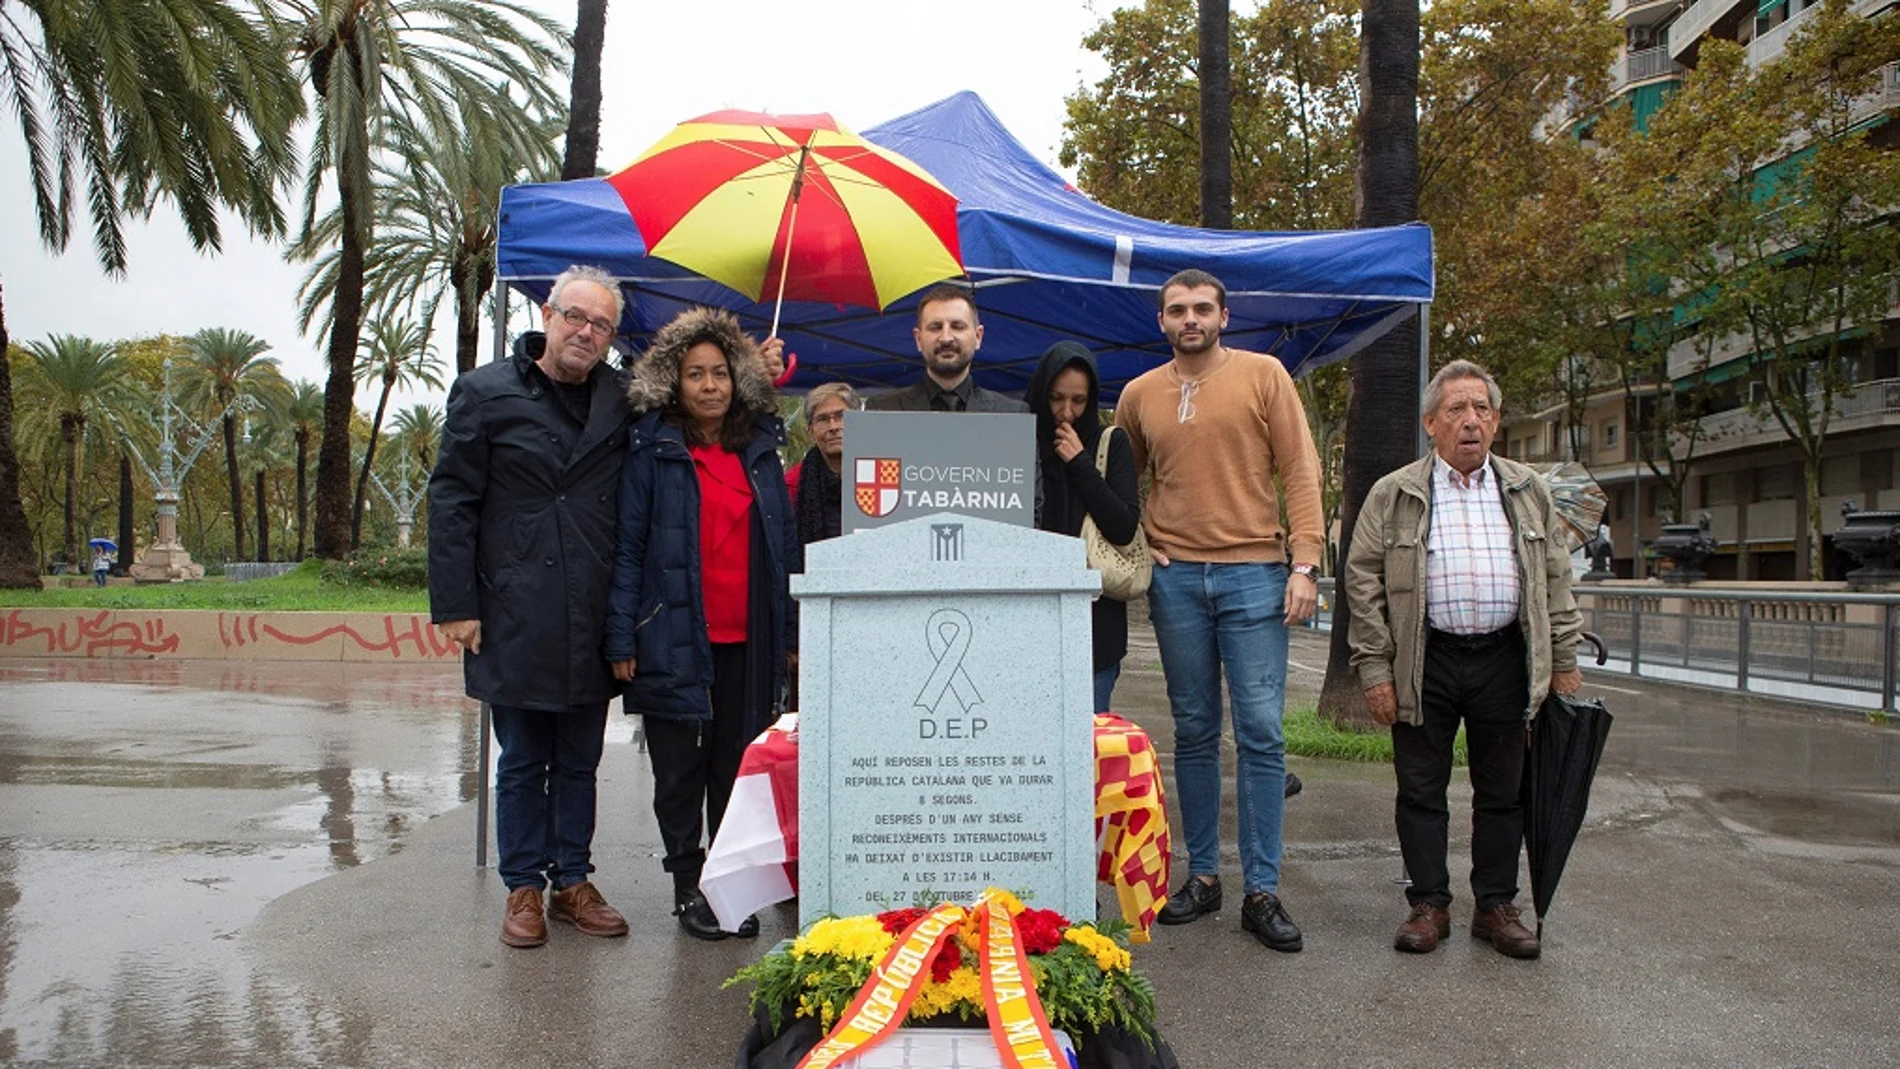 El satírico "Gobierno de Tabarnia" organiza un "funeral de la república catalana"